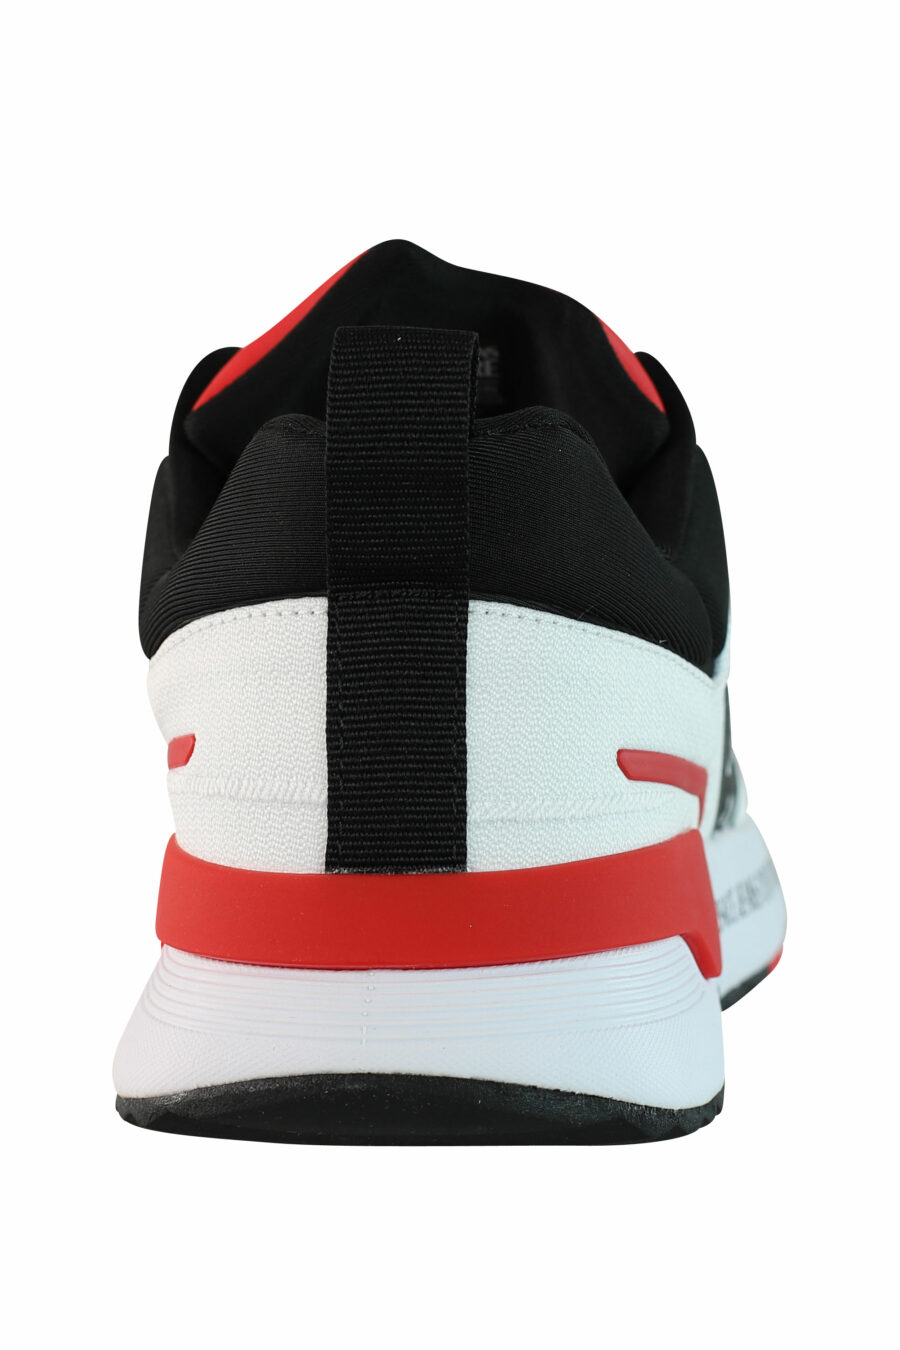 Zapatillas blancas multicolor con logo circular - IMG 0990